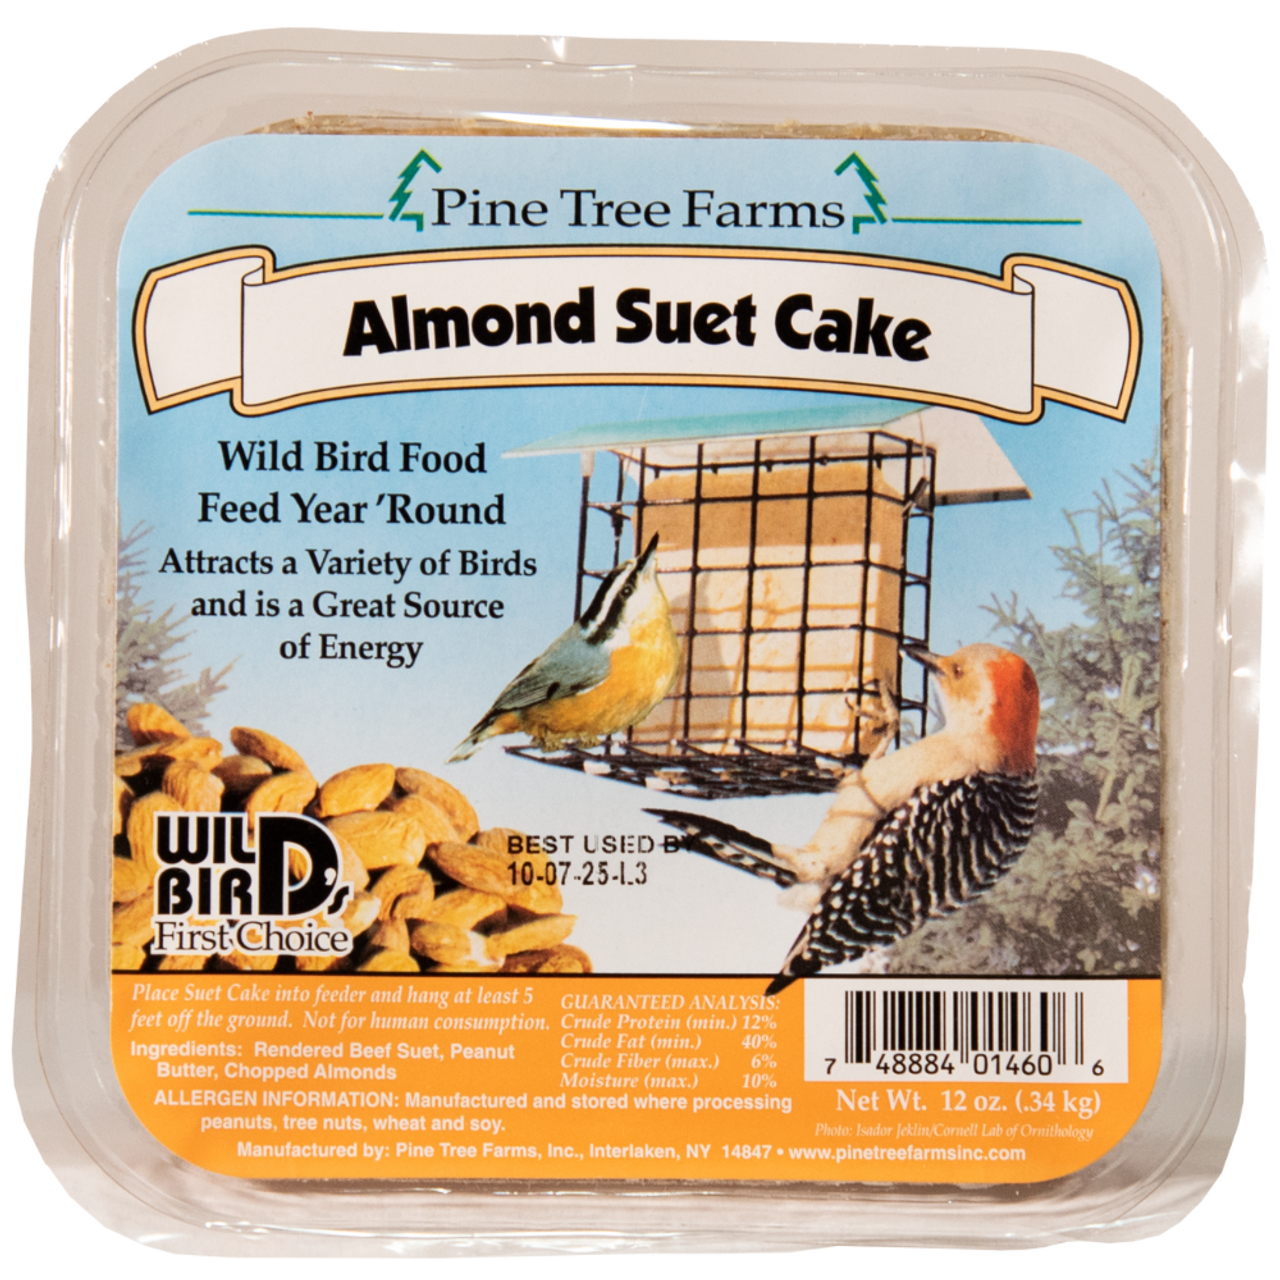 Pine Tree Farms Almond Suet Cake 12 oz. (12 Count)